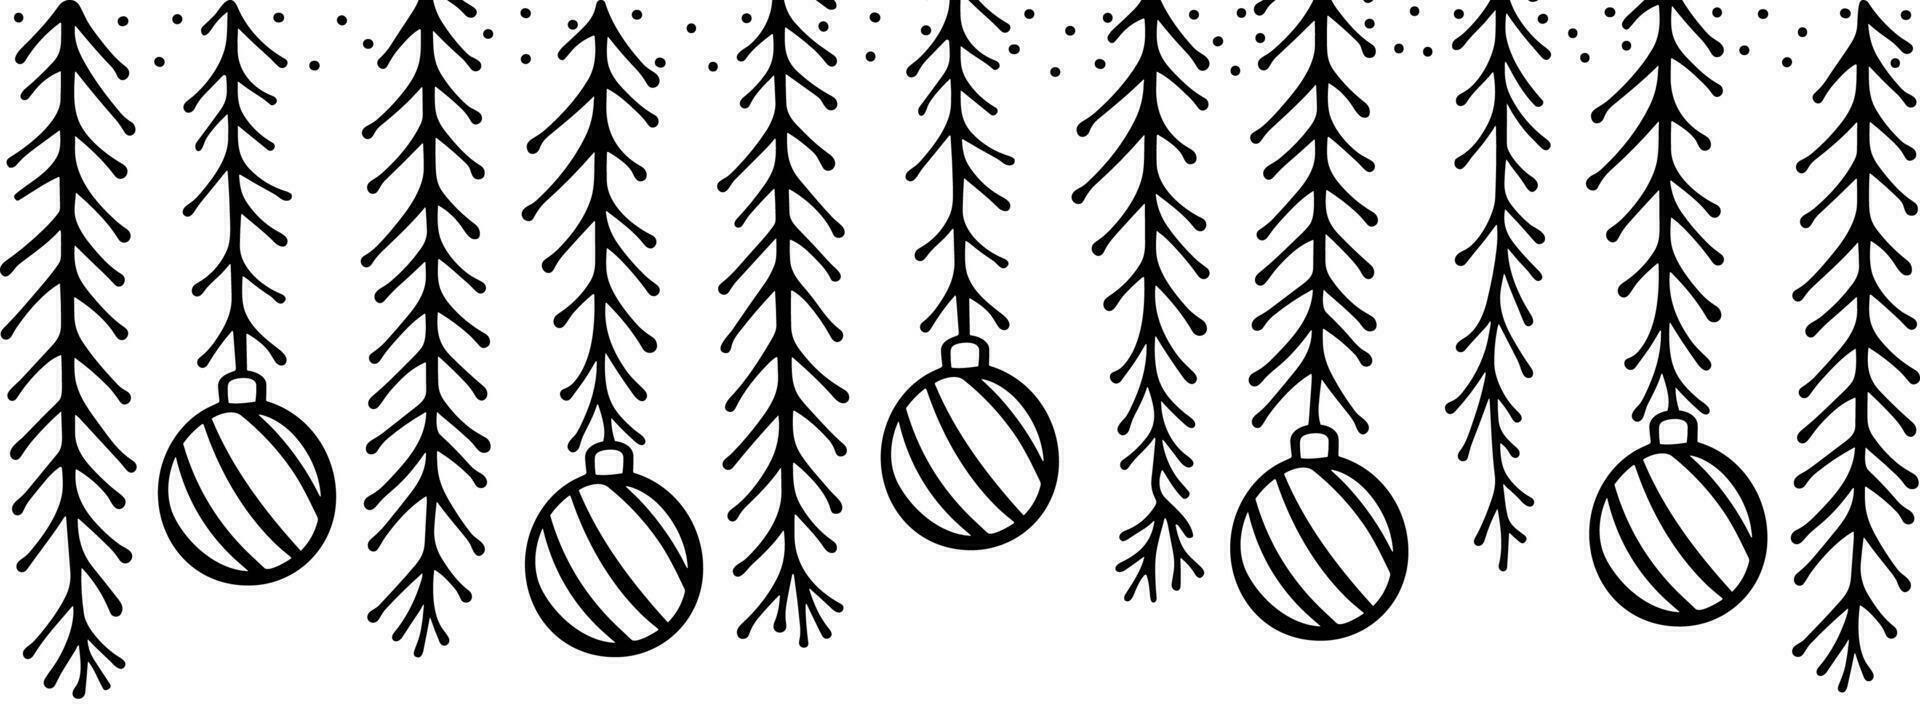 jul mönster med gran grenar och leksaker. skissat Semester kransar och dekorationer isolerat på vit bakgrund. hand dragen vektor illustration